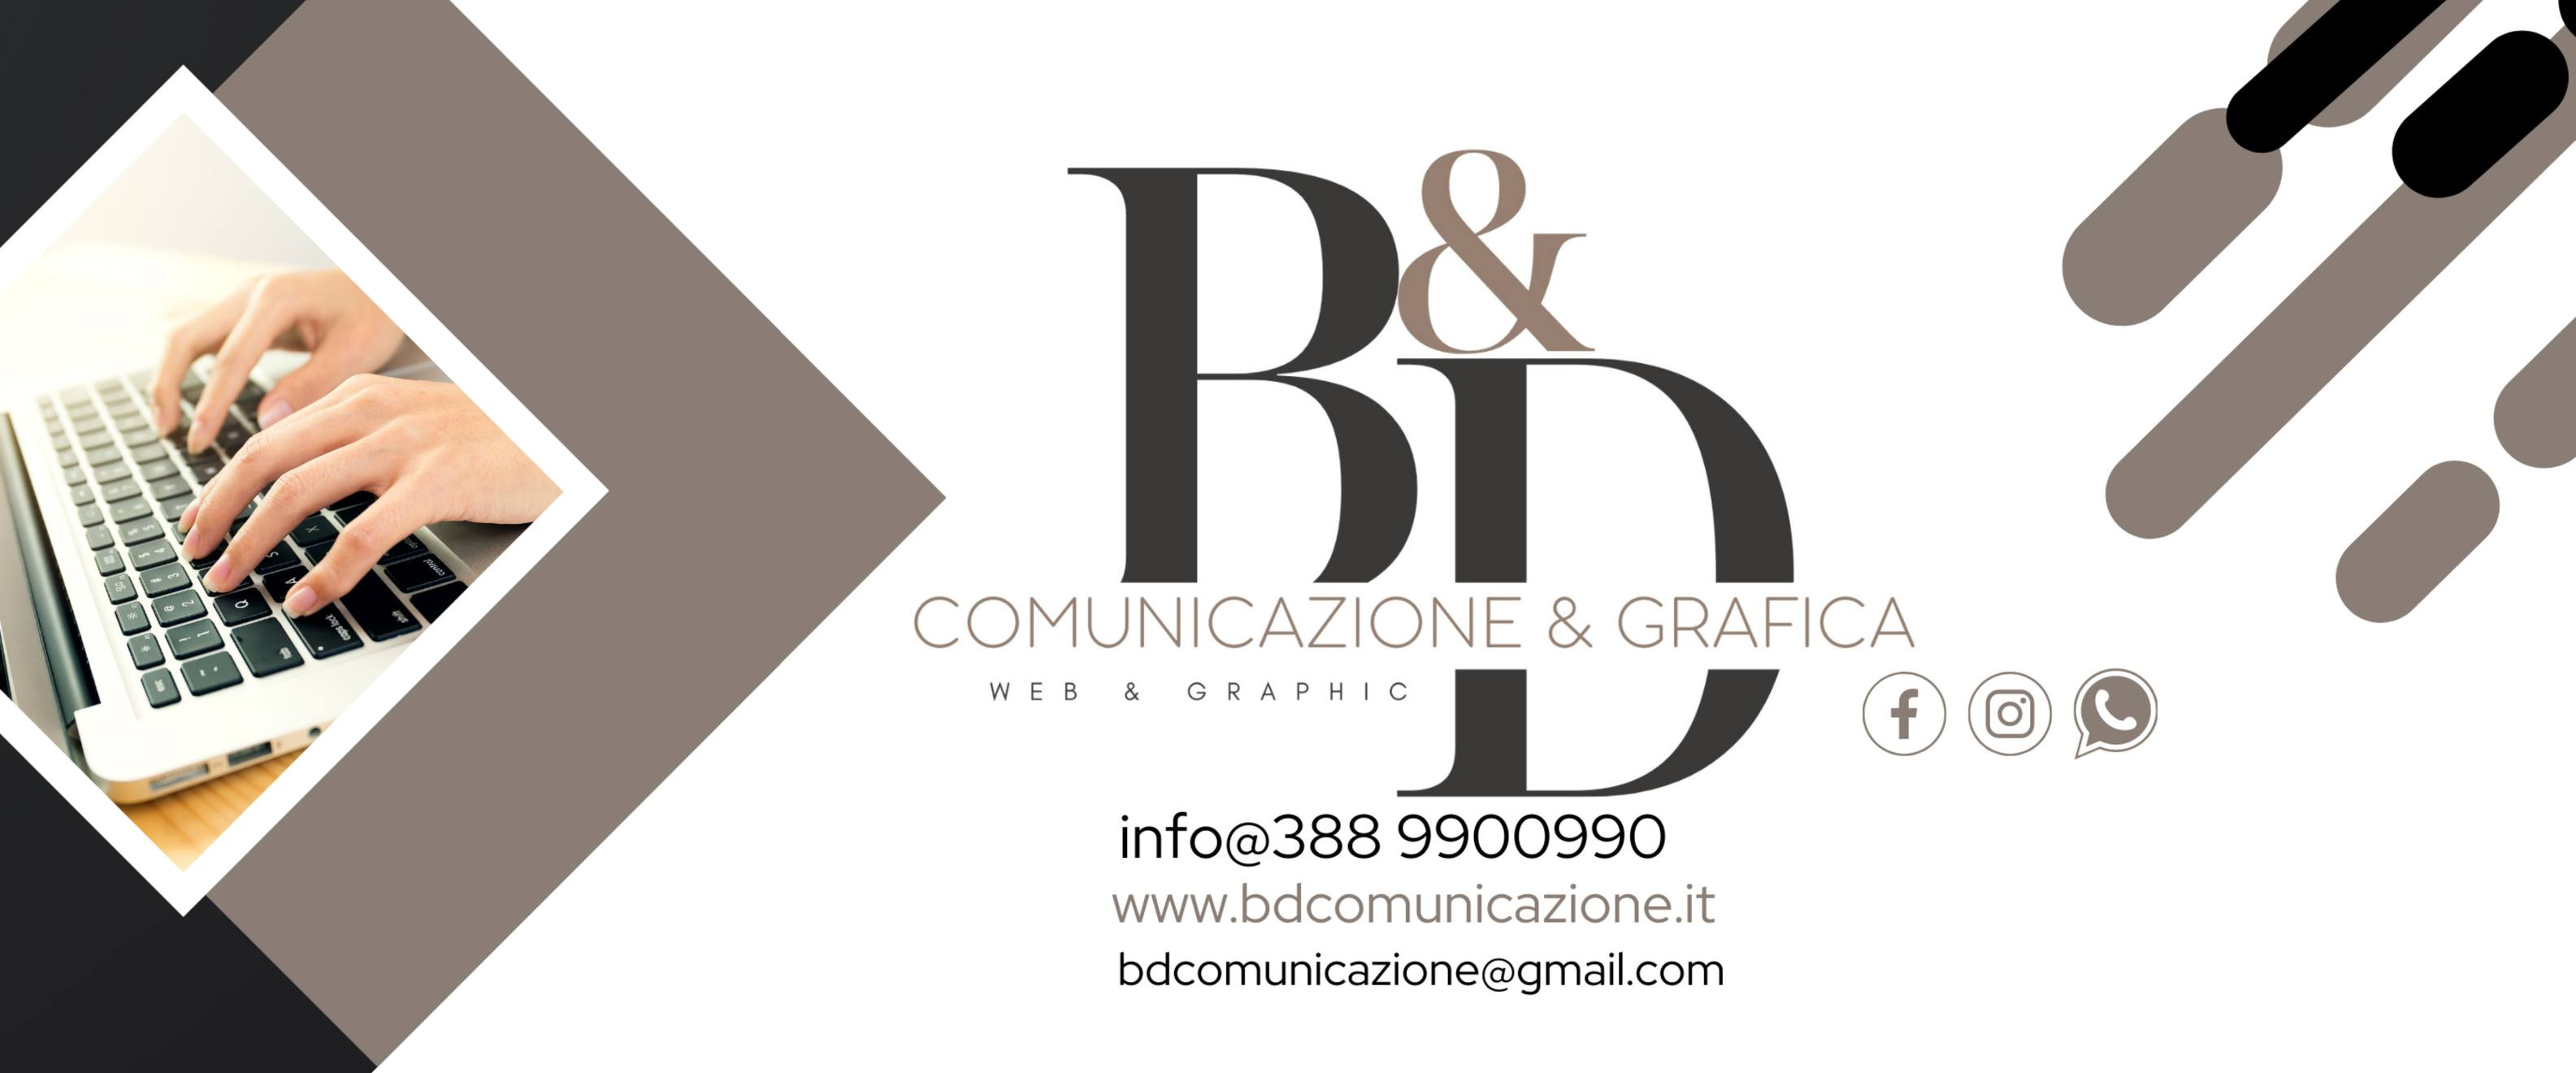 B&D Comunicazione & Grafica